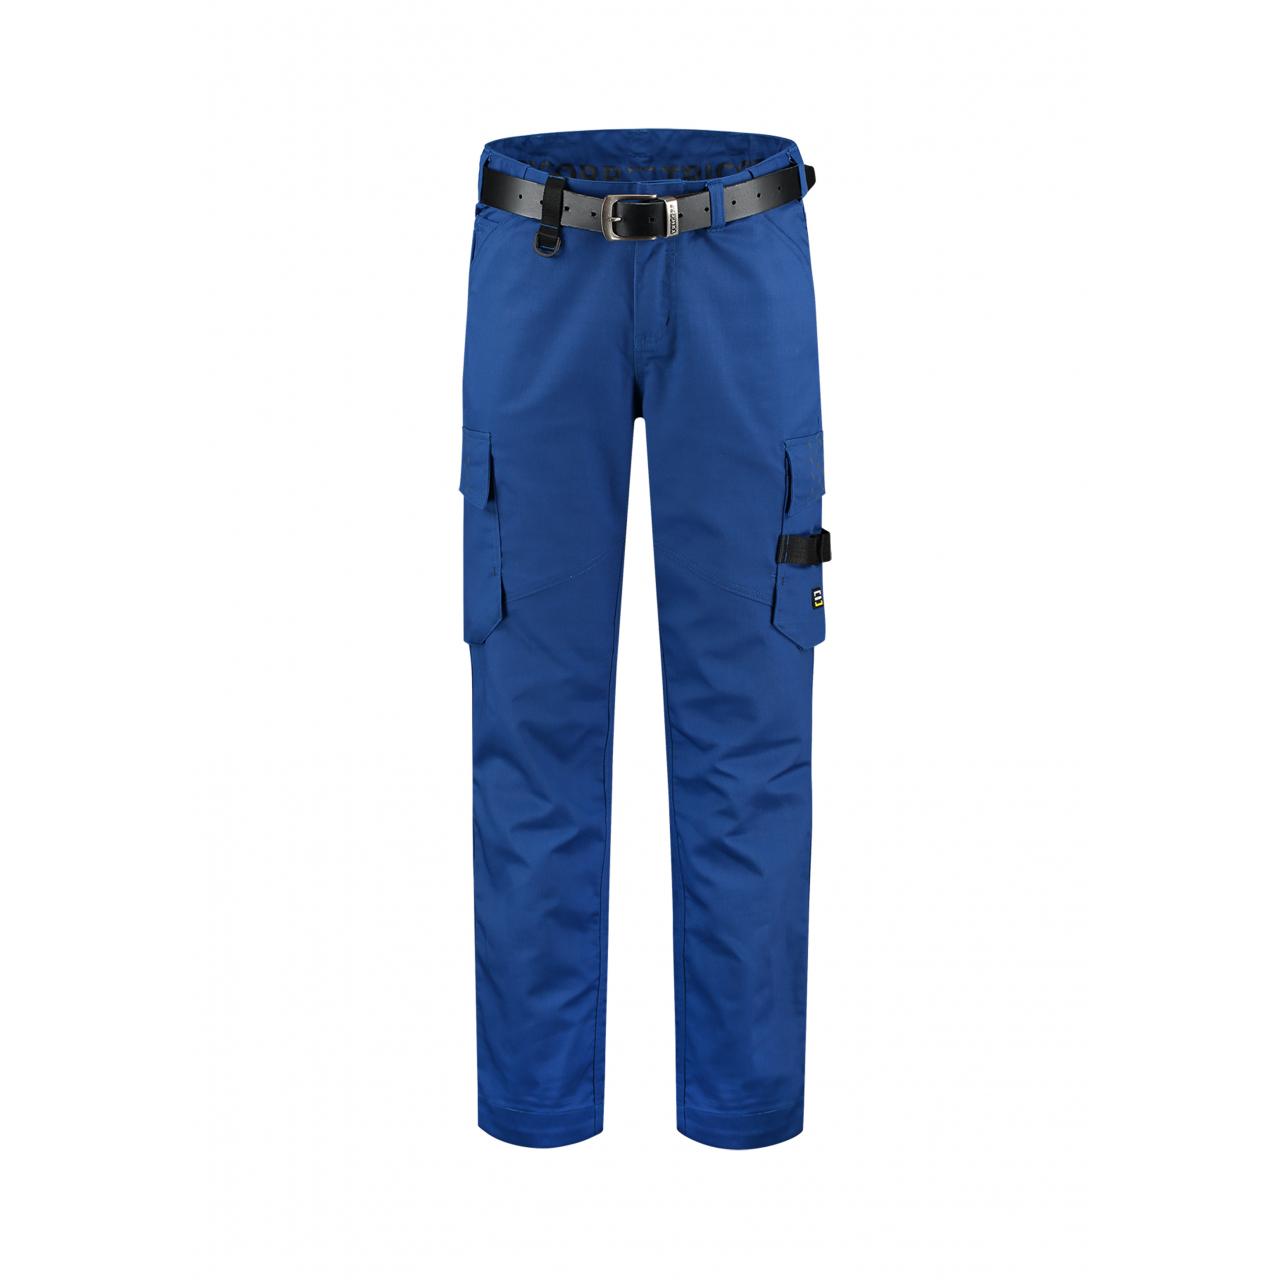 Pracovní kalhoty unisex Tricorp Work Pants Twill - modré, 47